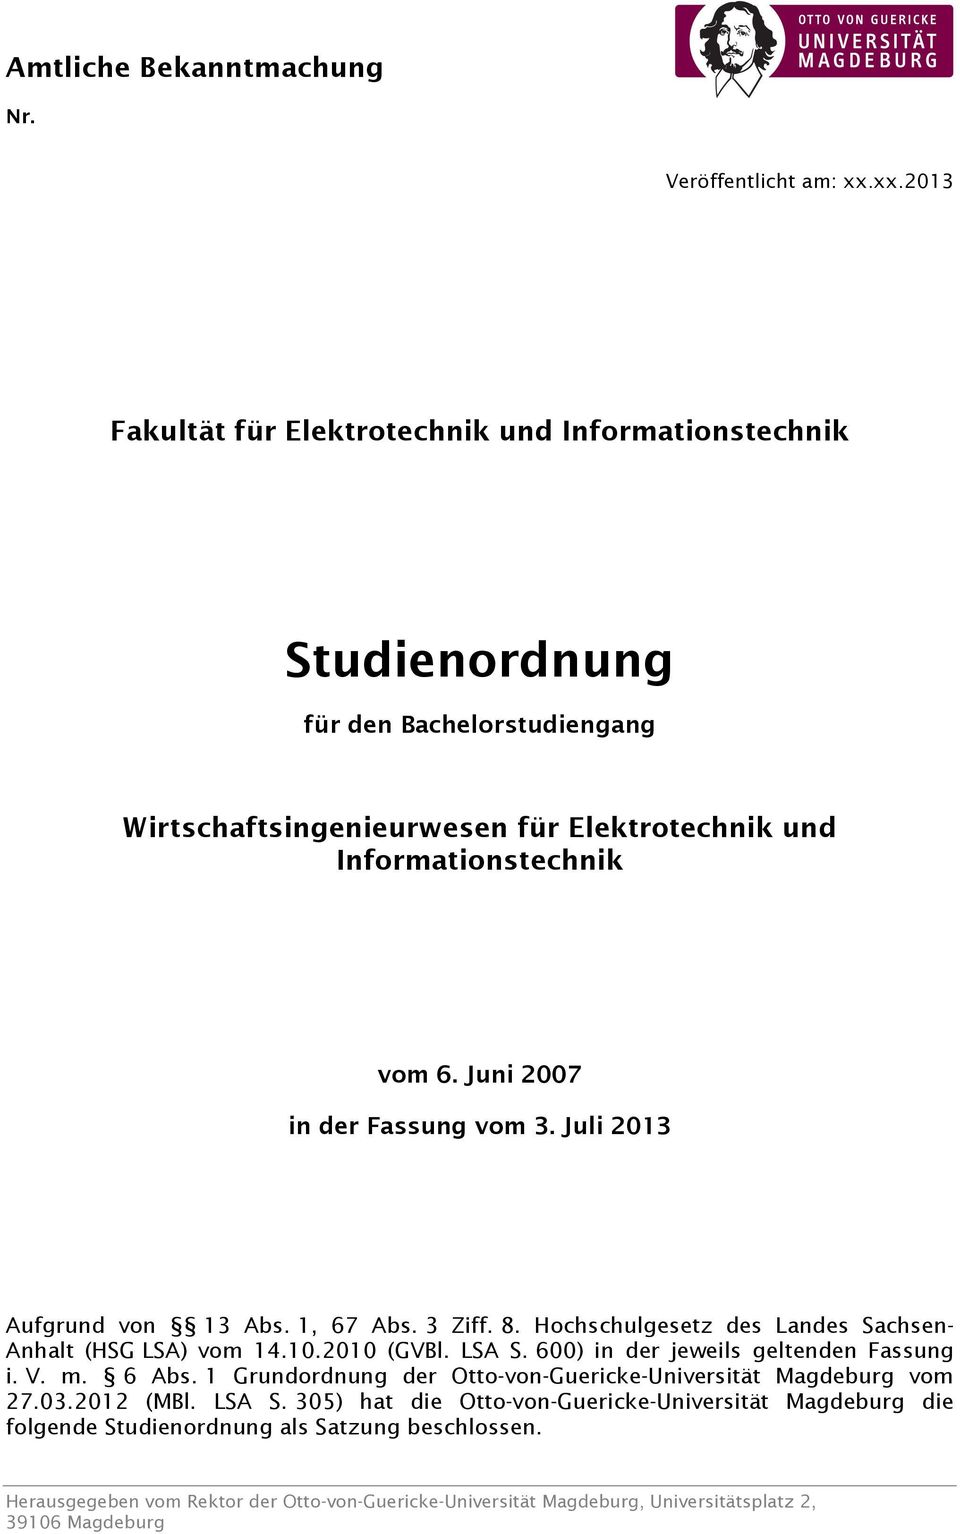 Juni 2007 in der Fassung vom 3. Juli 2013 Aufgrund von 13 Abs. 1, 67 Abs. 3 Ziff. 8. Hochschulgesetz des Landes Sachsen- Anhalt (HSG LSA) vom 14.10.2010 (GVBl. LSA S.